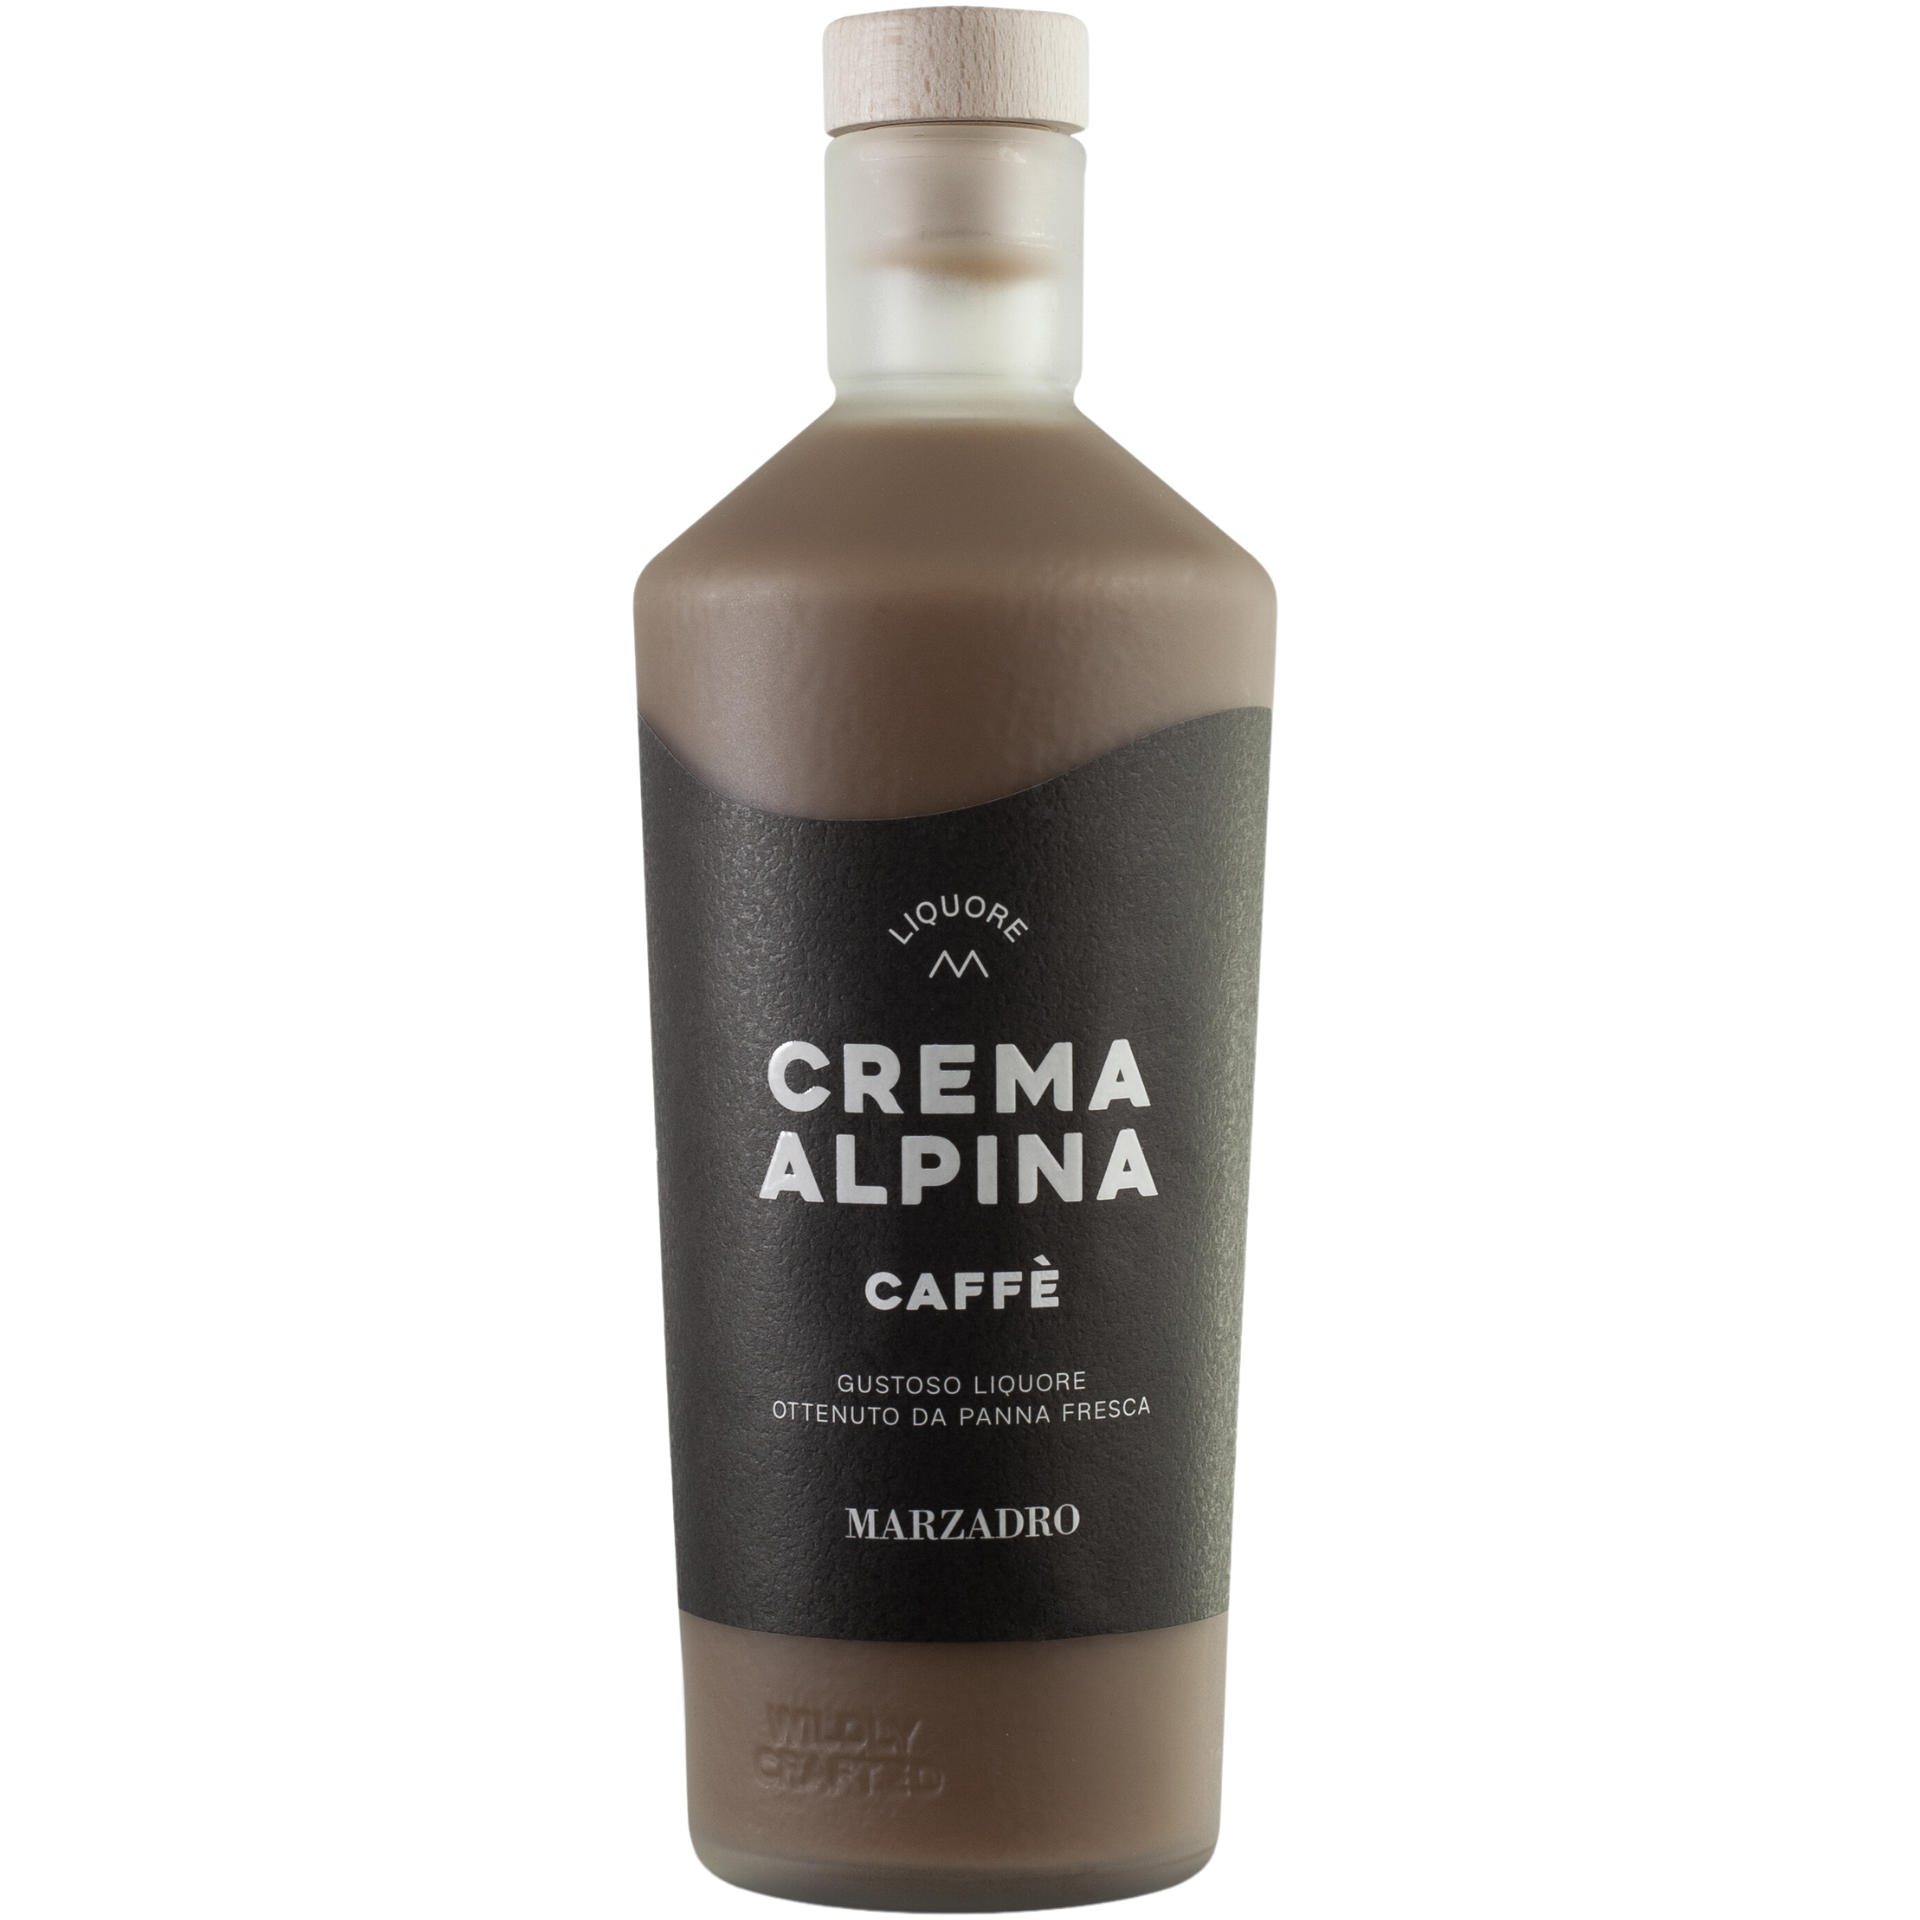 Marzadro Crema Alpina Caffè 17% 0,7l